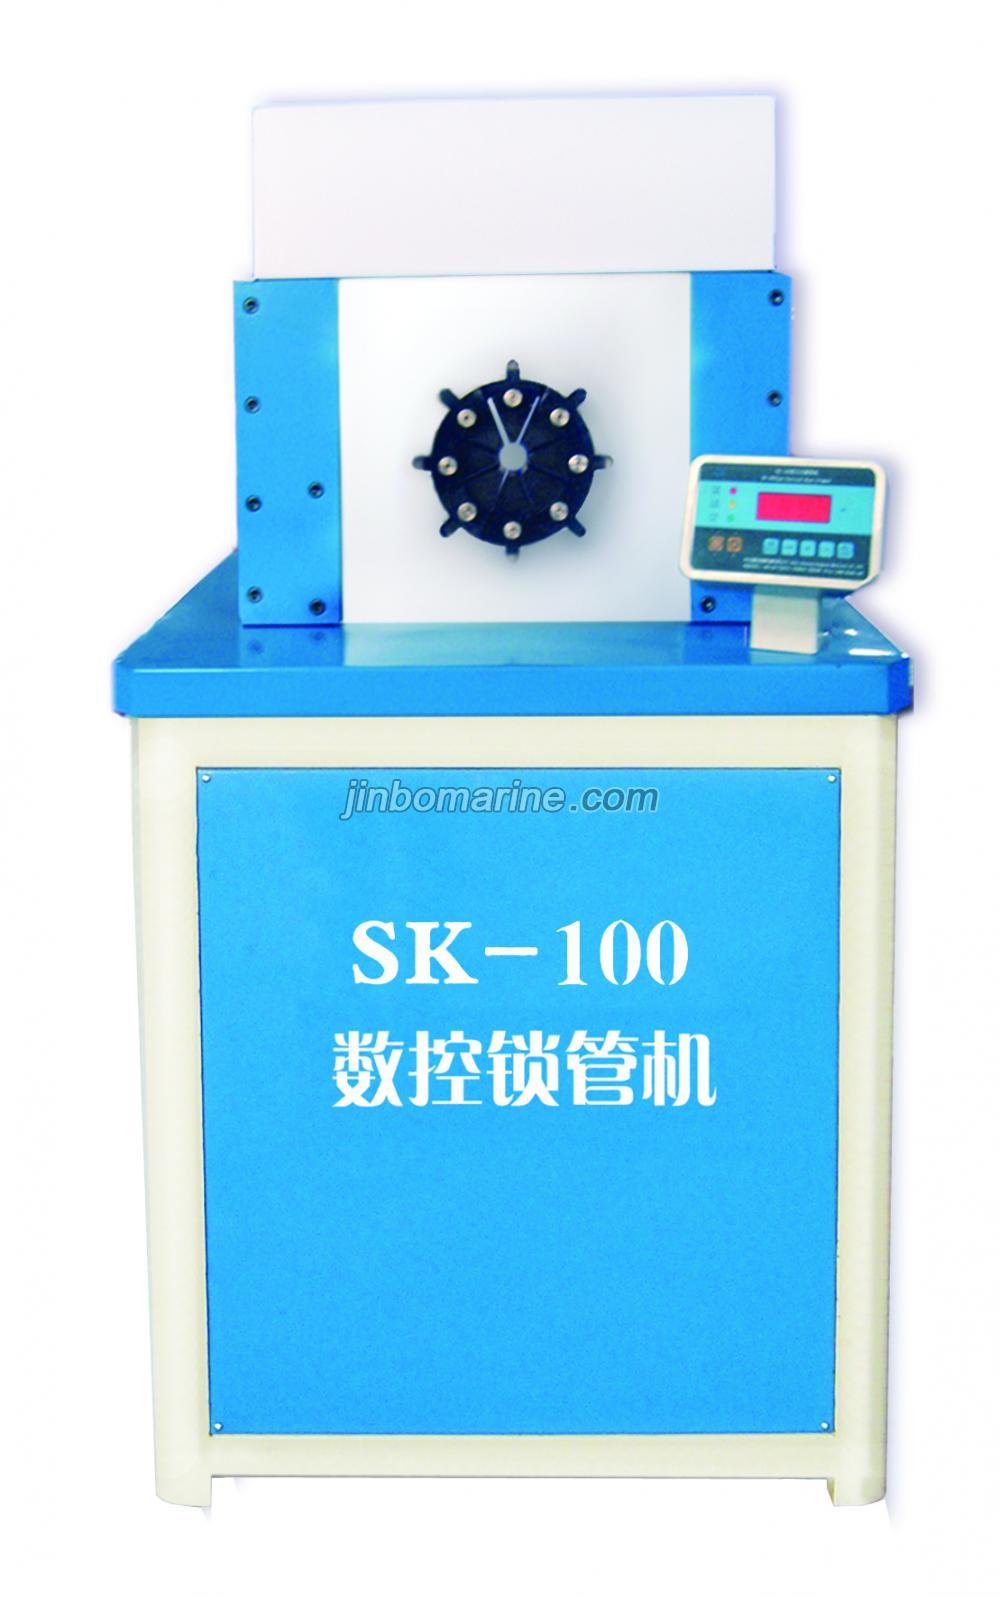 SK100 Numeric Control Locking Pipe Machine